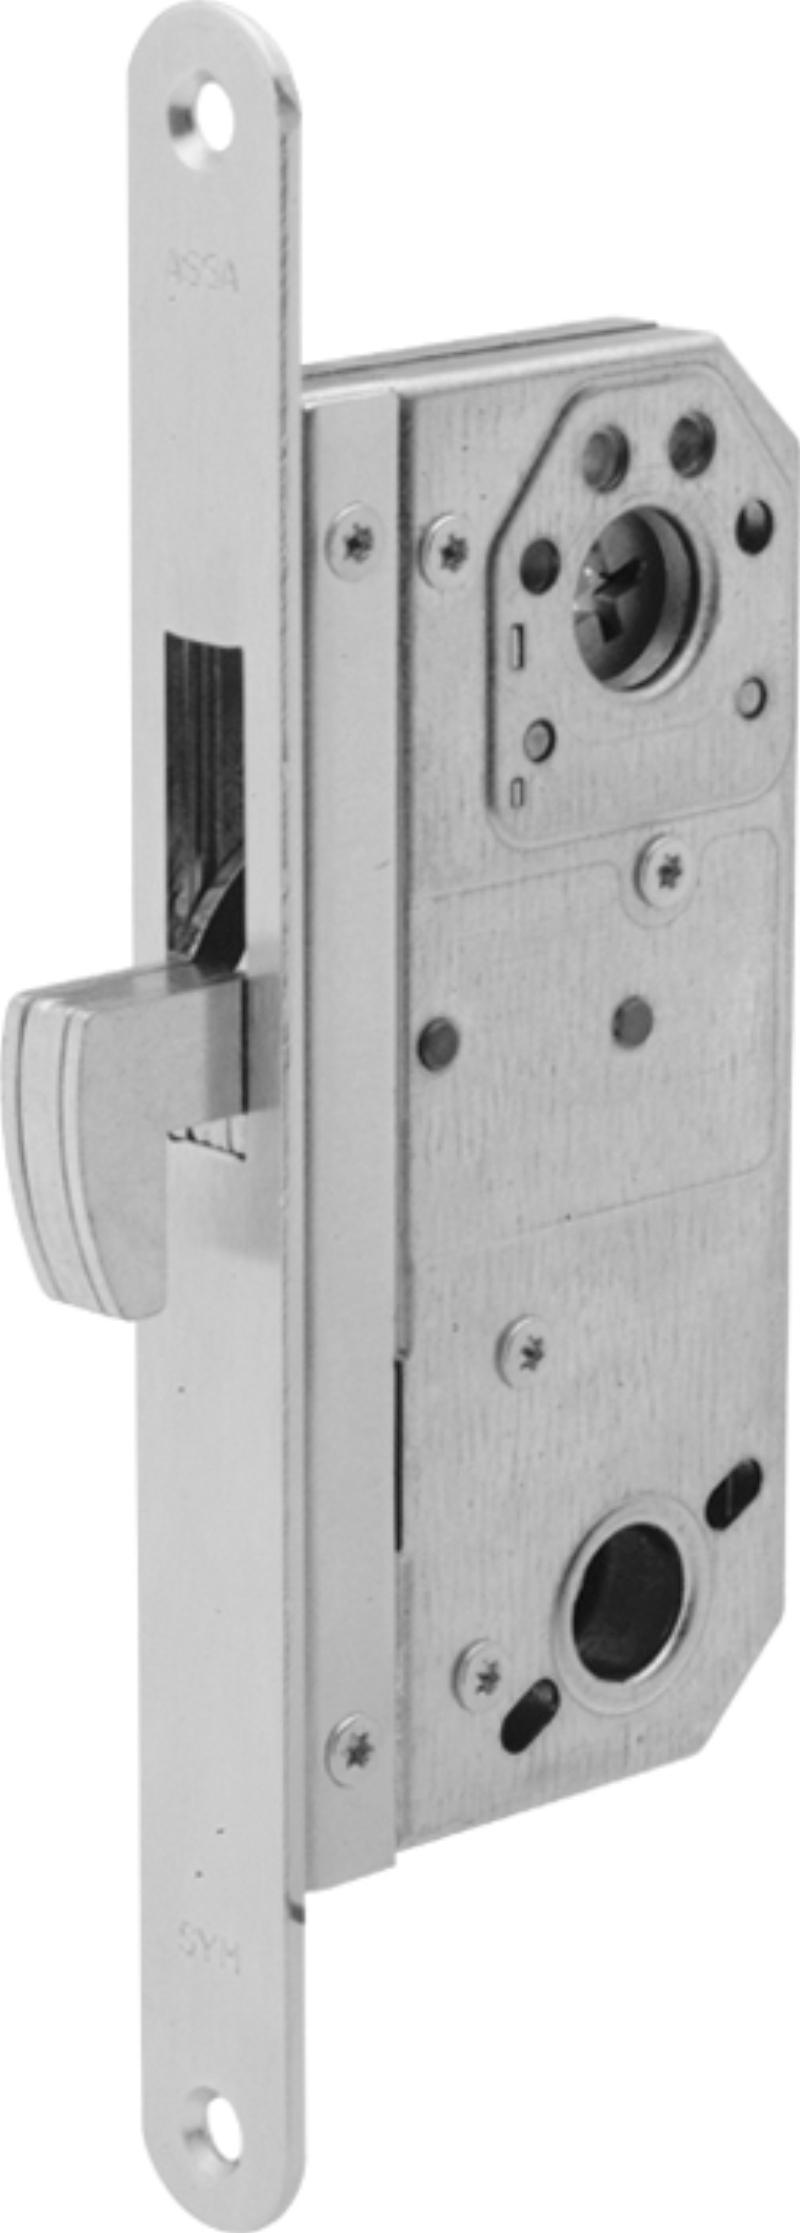 Assa låslåda 9787 m/plåt, med mikrobrytare (521119)